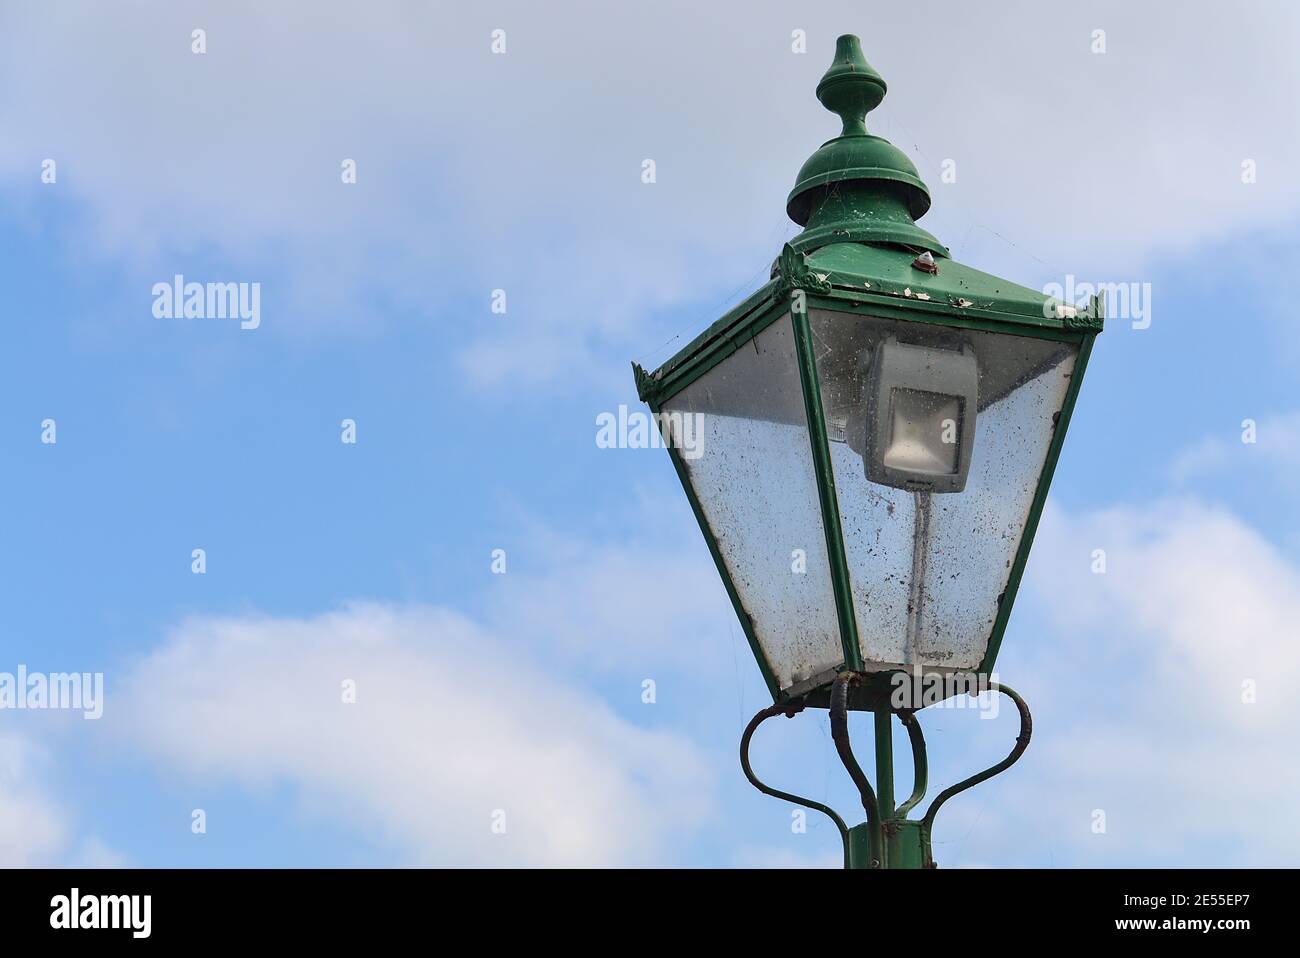 Belle lanterne de rue antique lumineuse et verte à l'ancienne gare de Newcastle, Sea Road, Leamore Upper, Arklow, Co. Wicklow, Irlande Banque D'Images